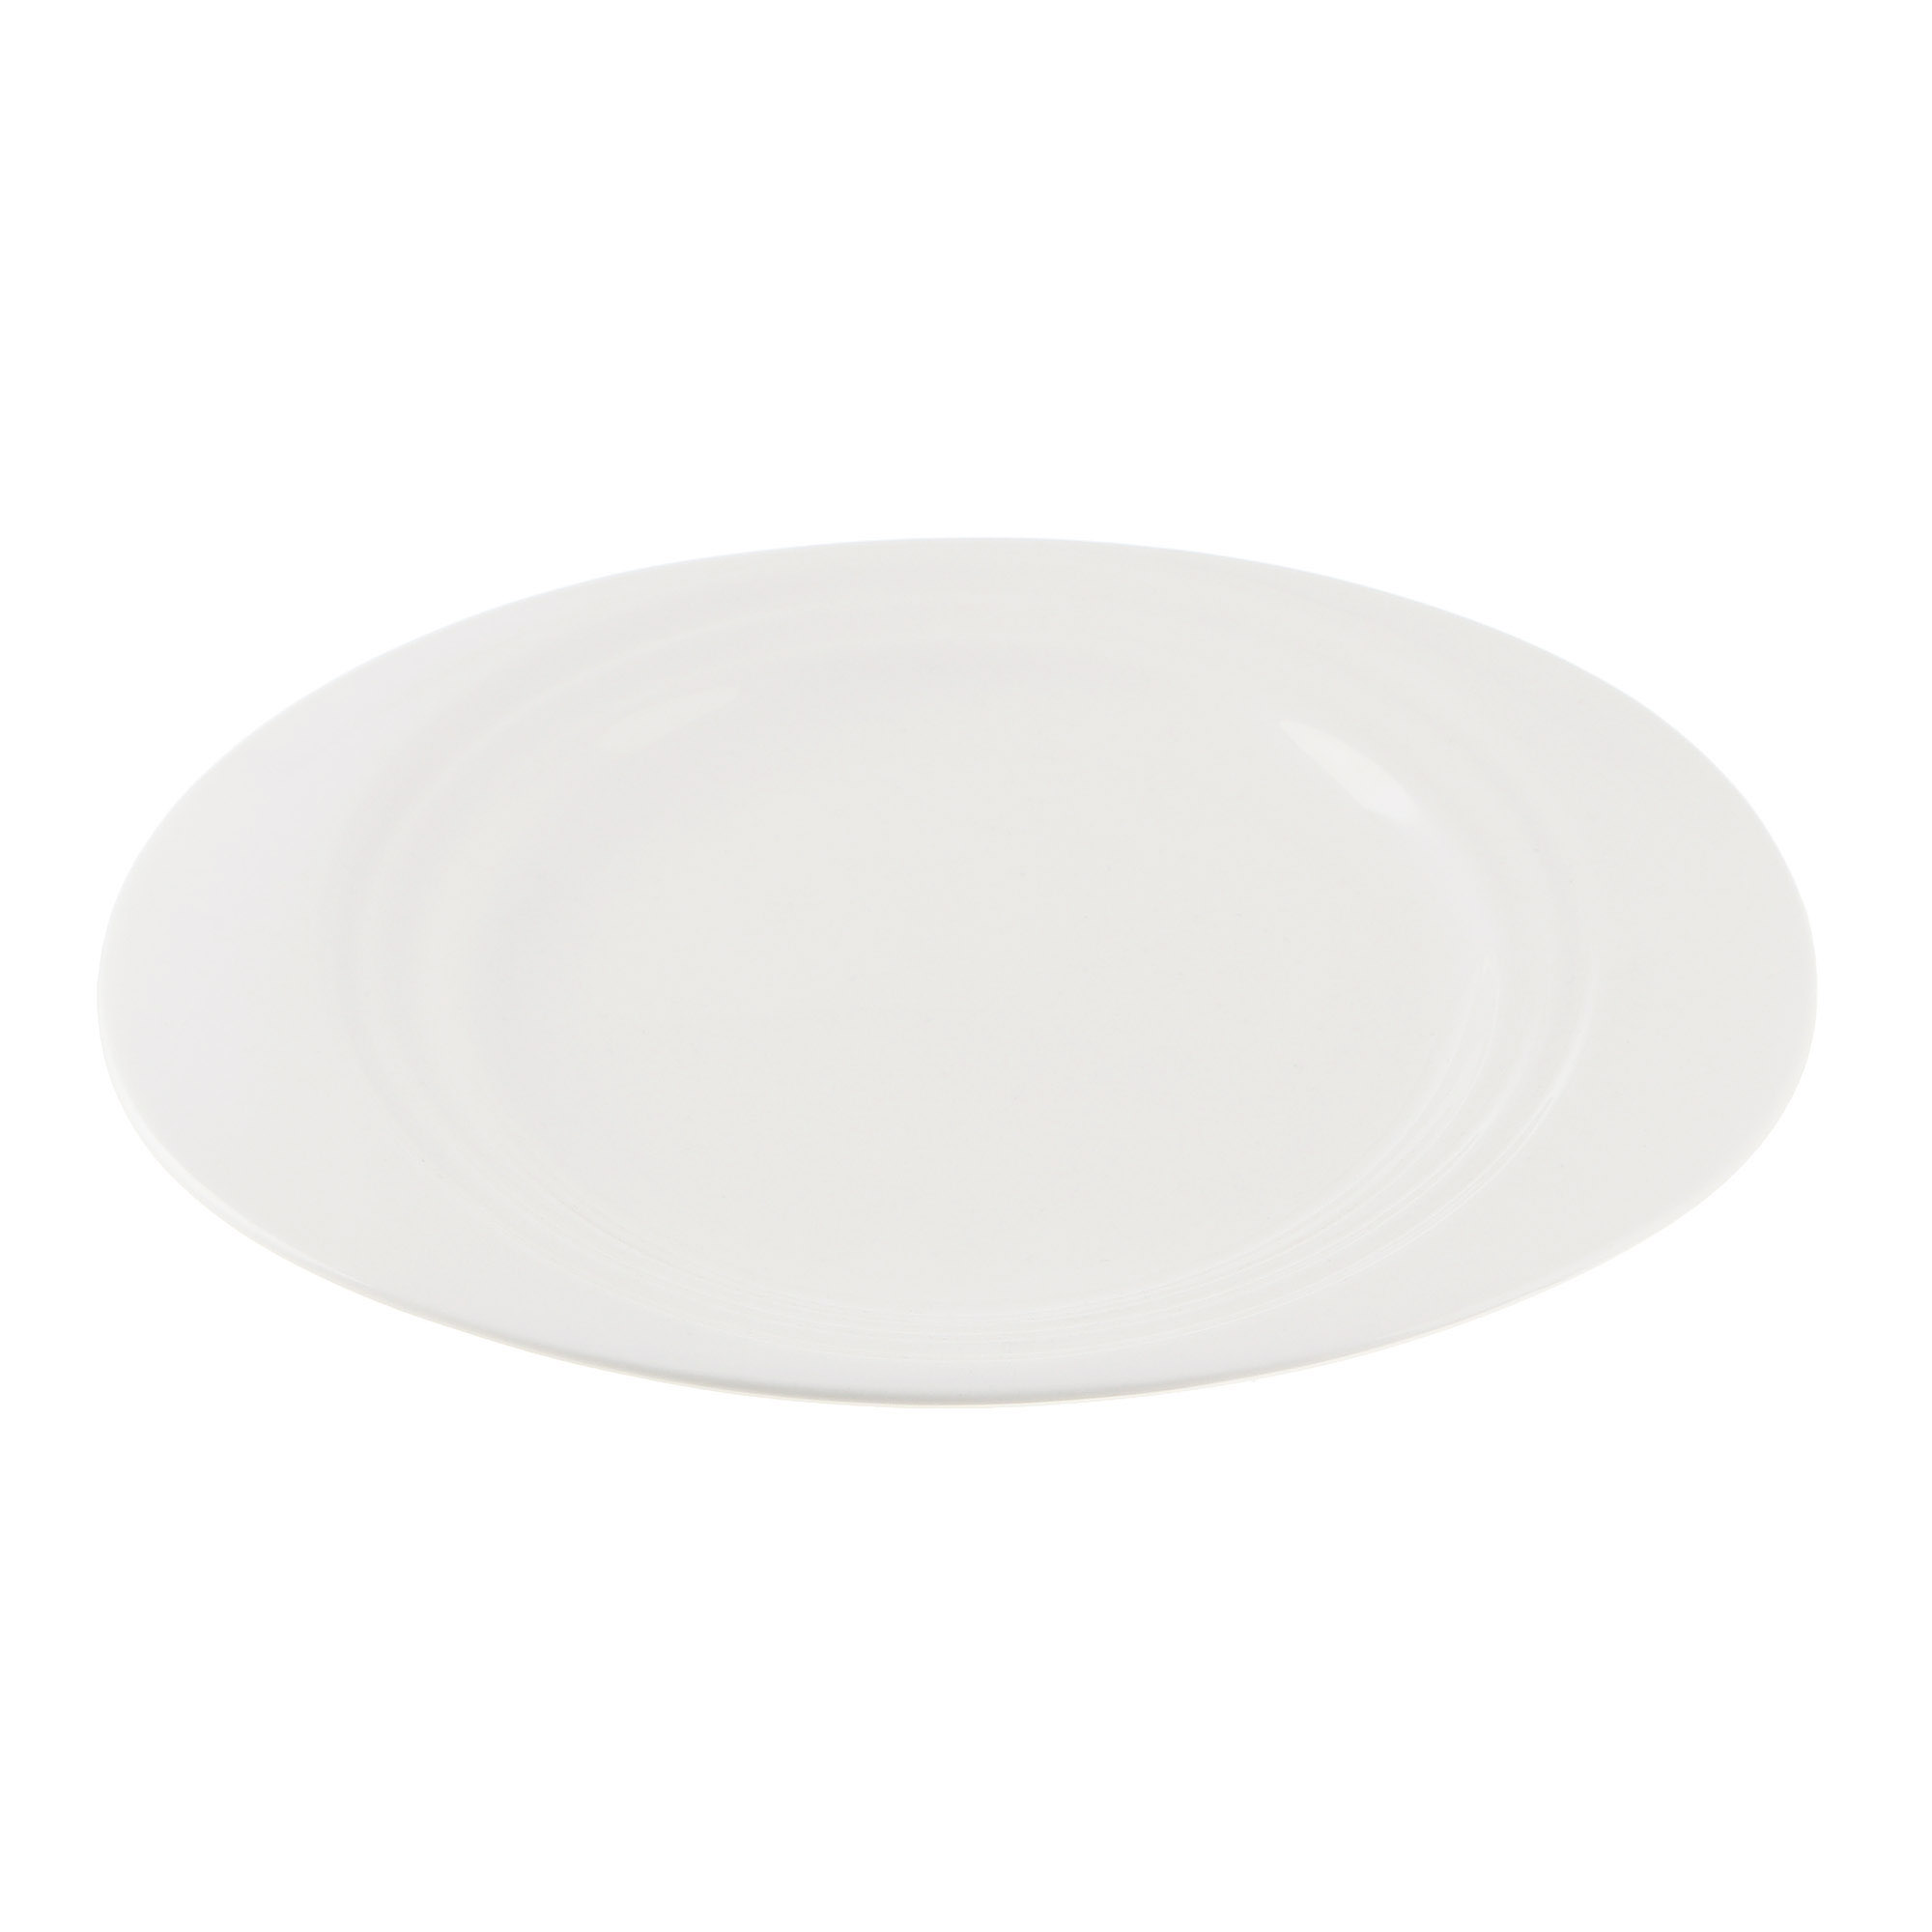 Тарелка Cameo Concentrics фарфор 28,2 см тарелка cameo imperial white d30 5 см 210 121